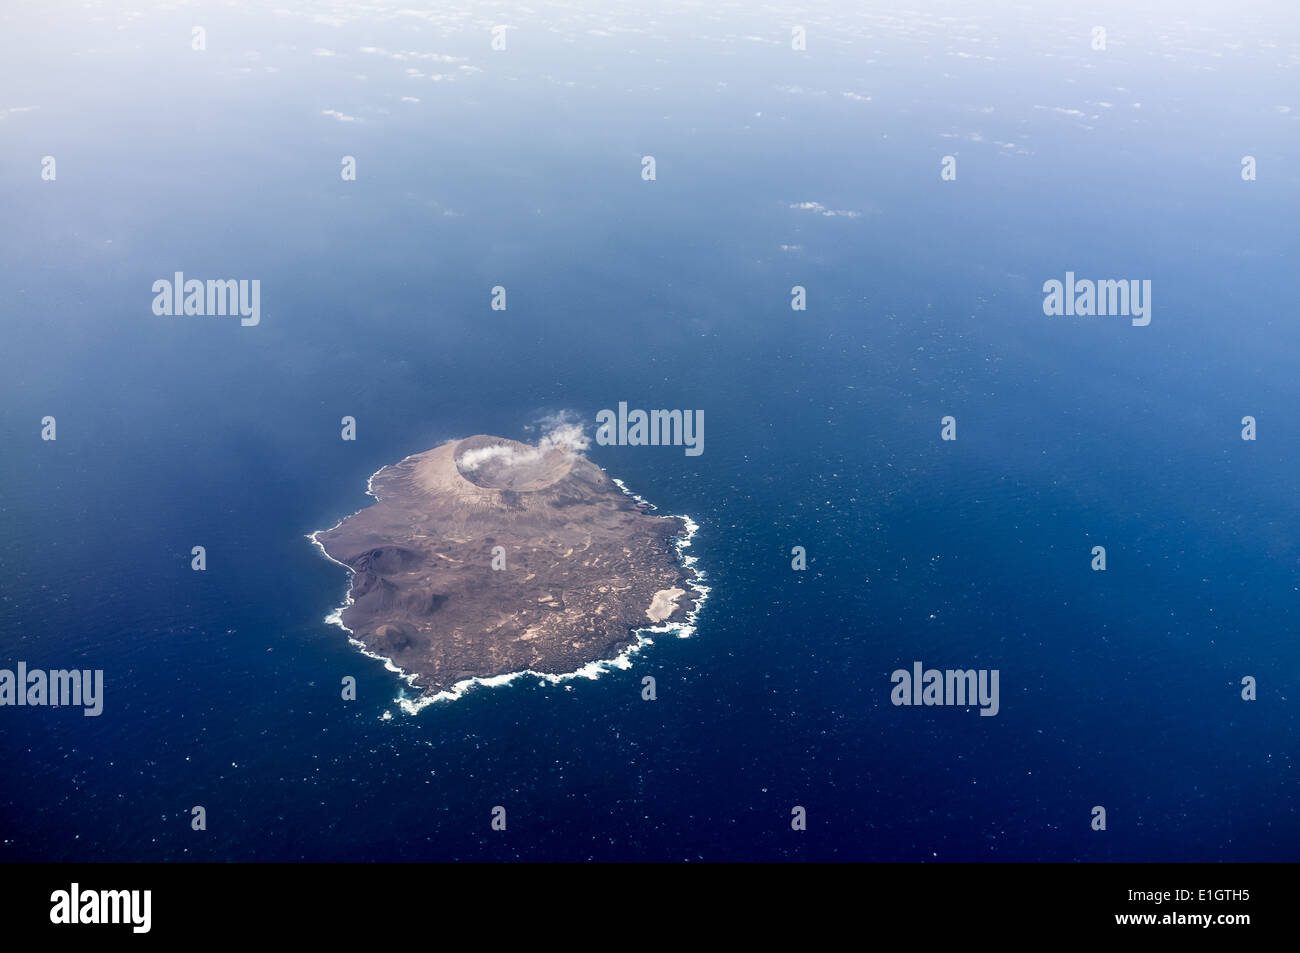 Aerial view of volcanic island Isla de Alegranza in Lanzarote. Stock Photo